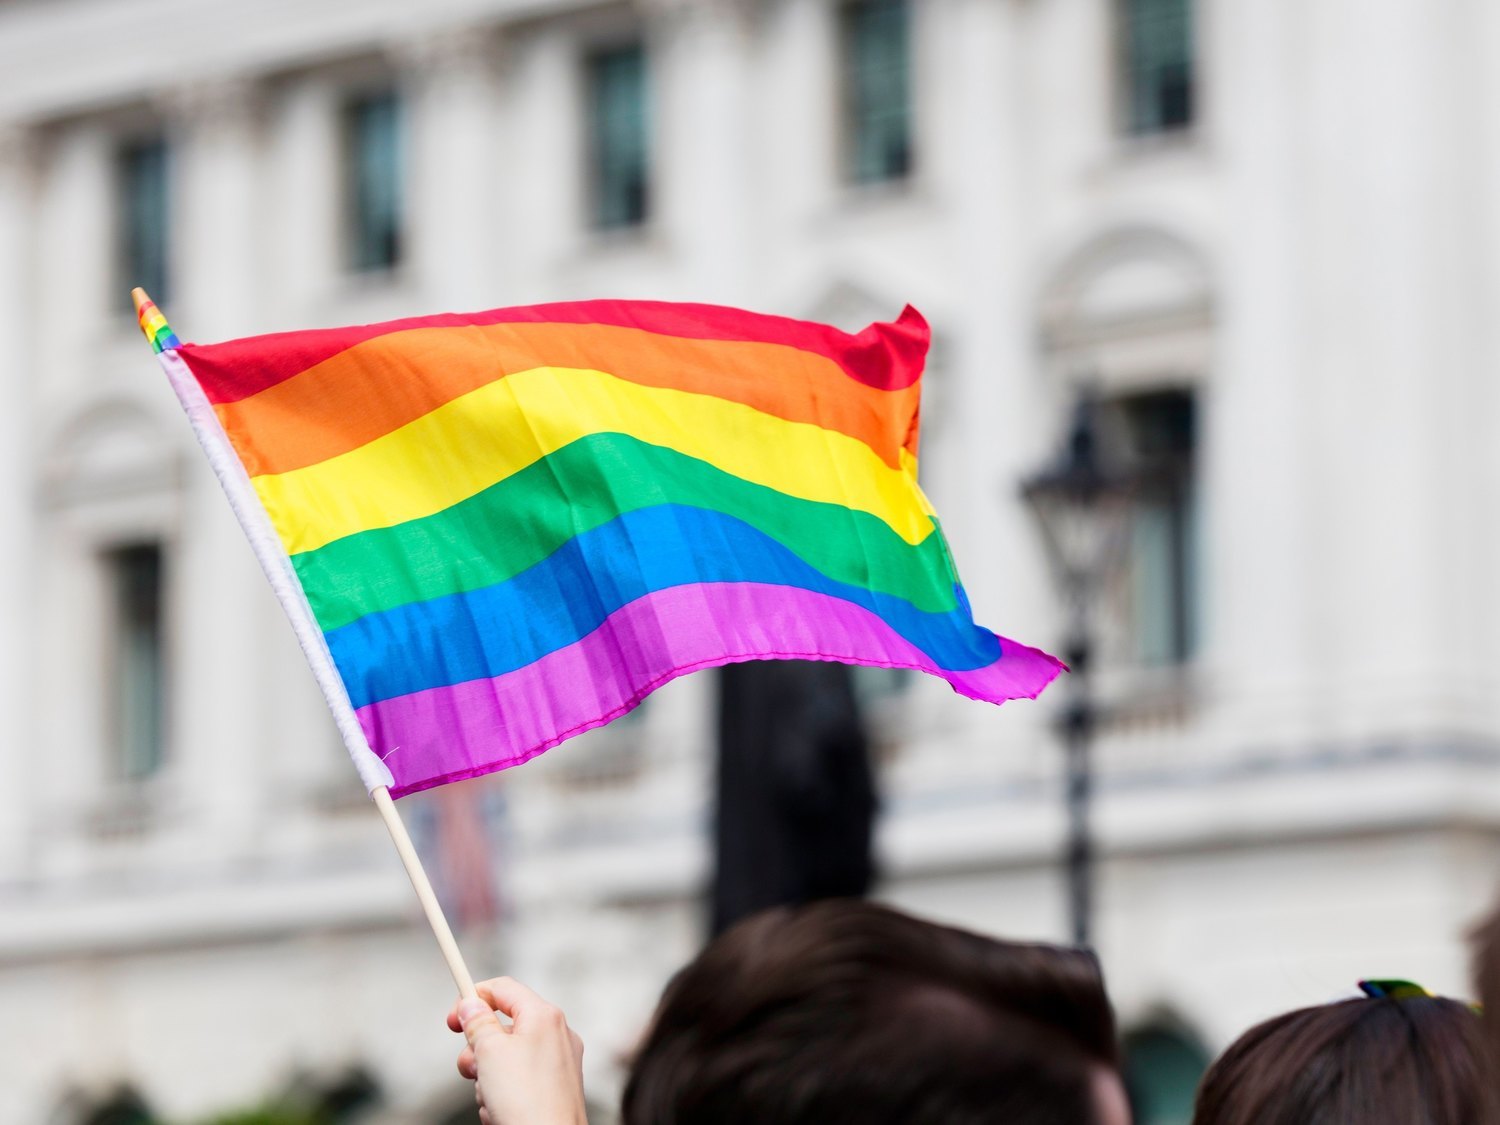 Mes del Orgullo LGTBI: ¿Por qué se celebra en junio? ¿Qué rememora? ¿Cuál fue la primera marcha?